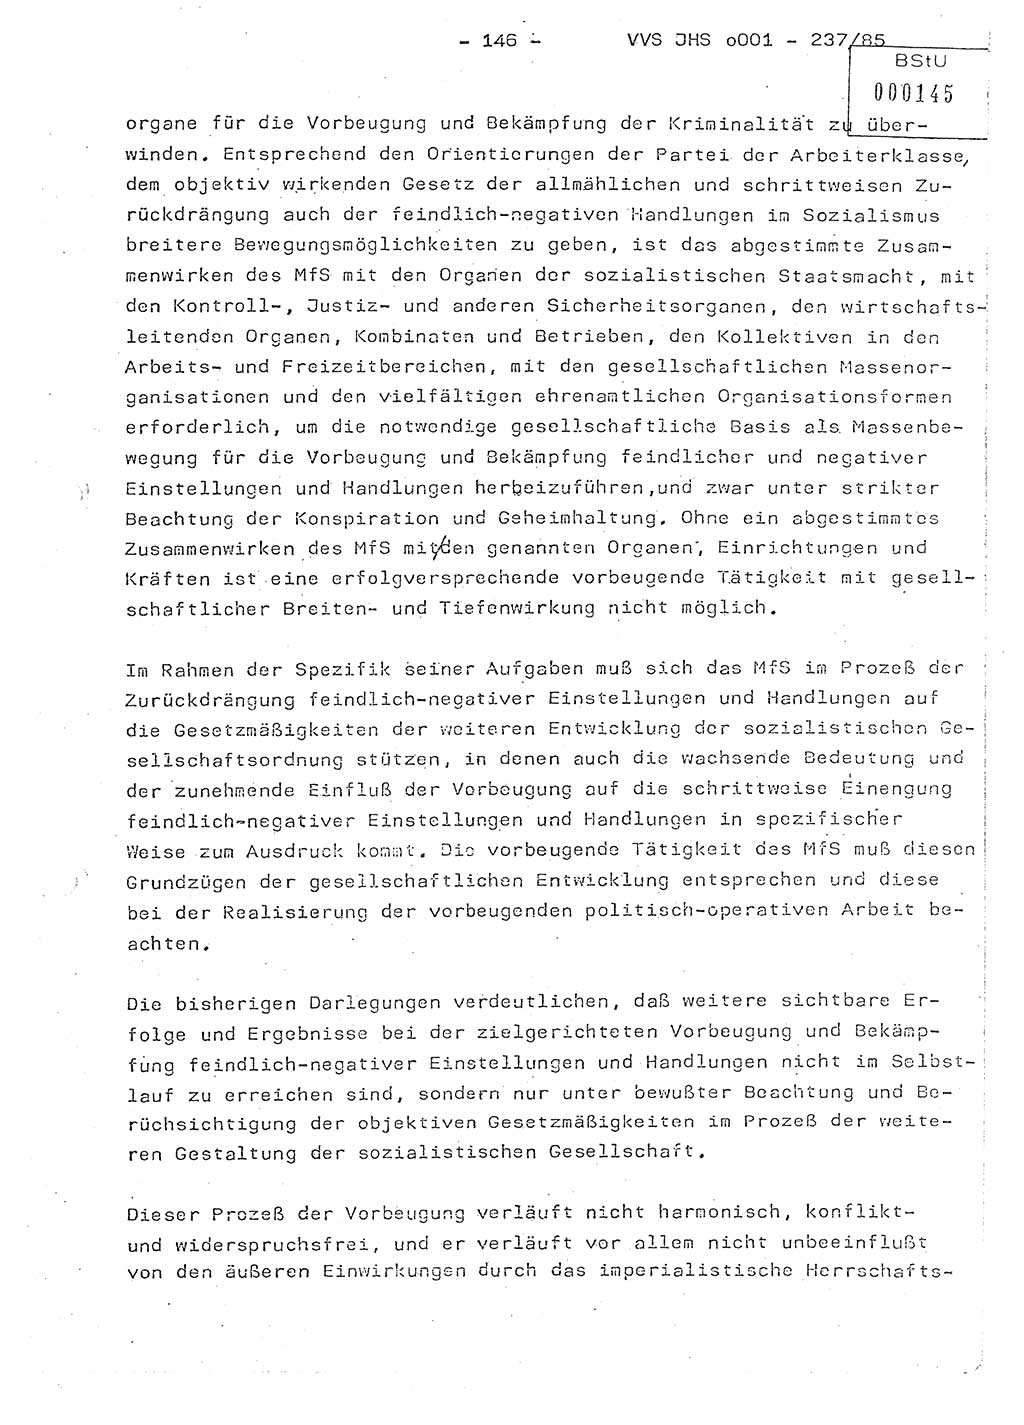 Dissertation Oberstleutnant Peter Jakulski (JHS), Oberstleutnat Christian Rudolph (HA Ⅸ), Major Horst Böttger (ZMD), Major Wolfgang Grüneberg (JHS), Major Albert Meutsch (JHS), Ministerium für Staatssicherheit (MfS) [Deutsche Demokratische Republik (DDR)], Juristische Hochschule (JHS), Vertrauliche Verschlußsache (VVS) o001-237/85, Potsdam 1985, Seite 146 (Diss. MfS DDR JHS VVS o001-237/85 1985, S. 146)